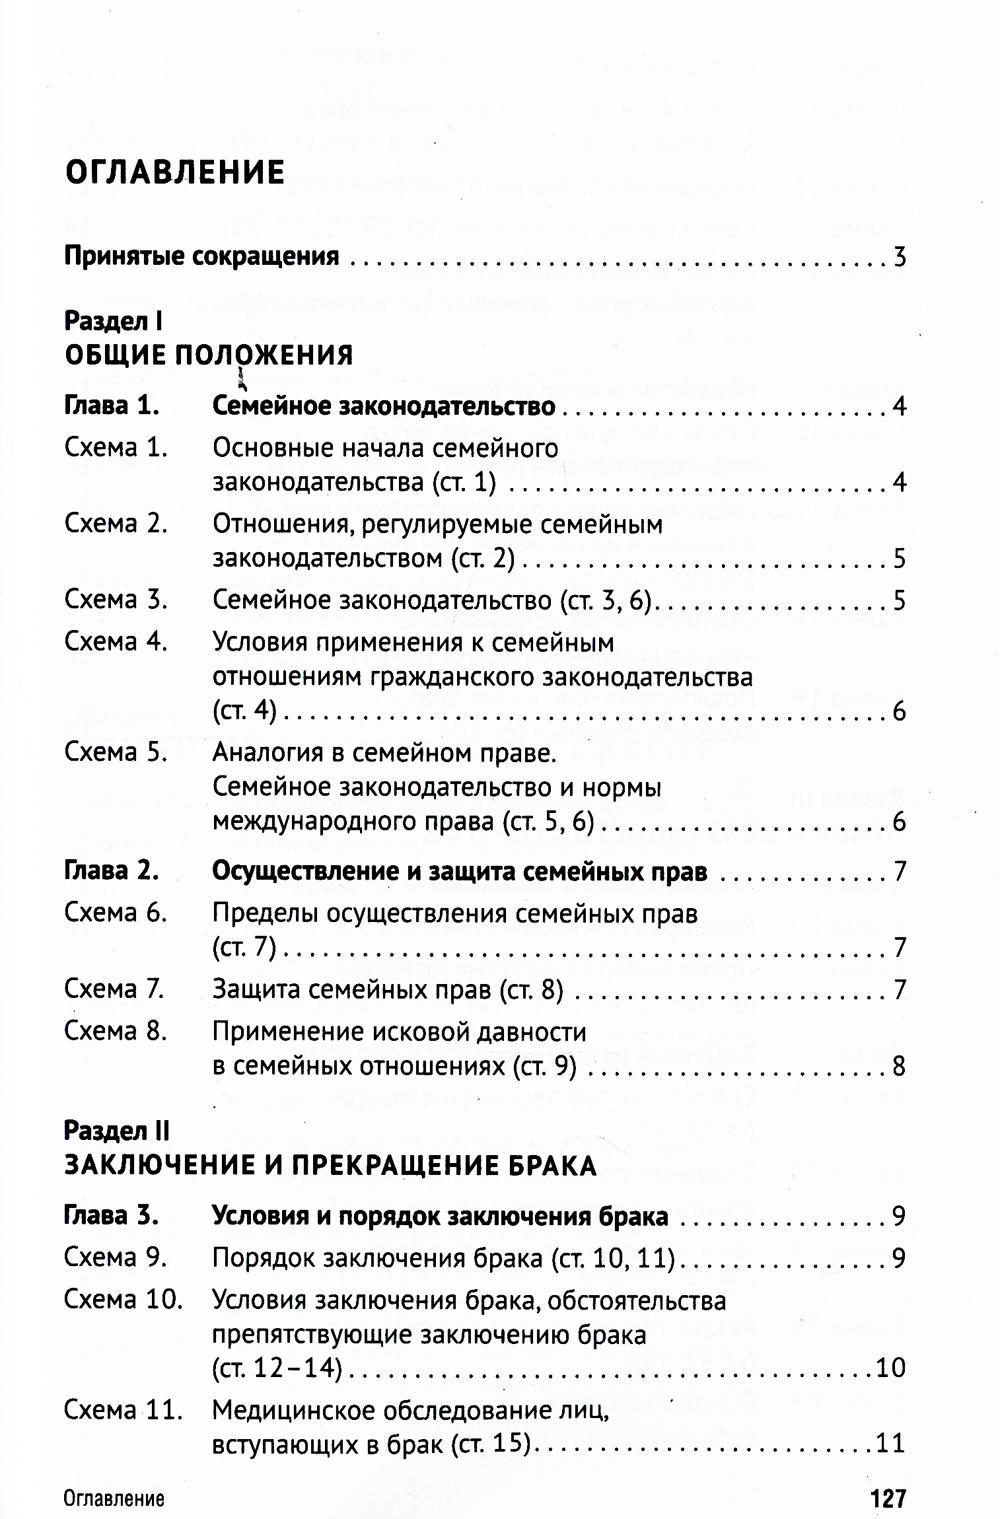 Семейный кодекс РФ в схемах: Учебное пособие. 2-е изд., перераб. и доп